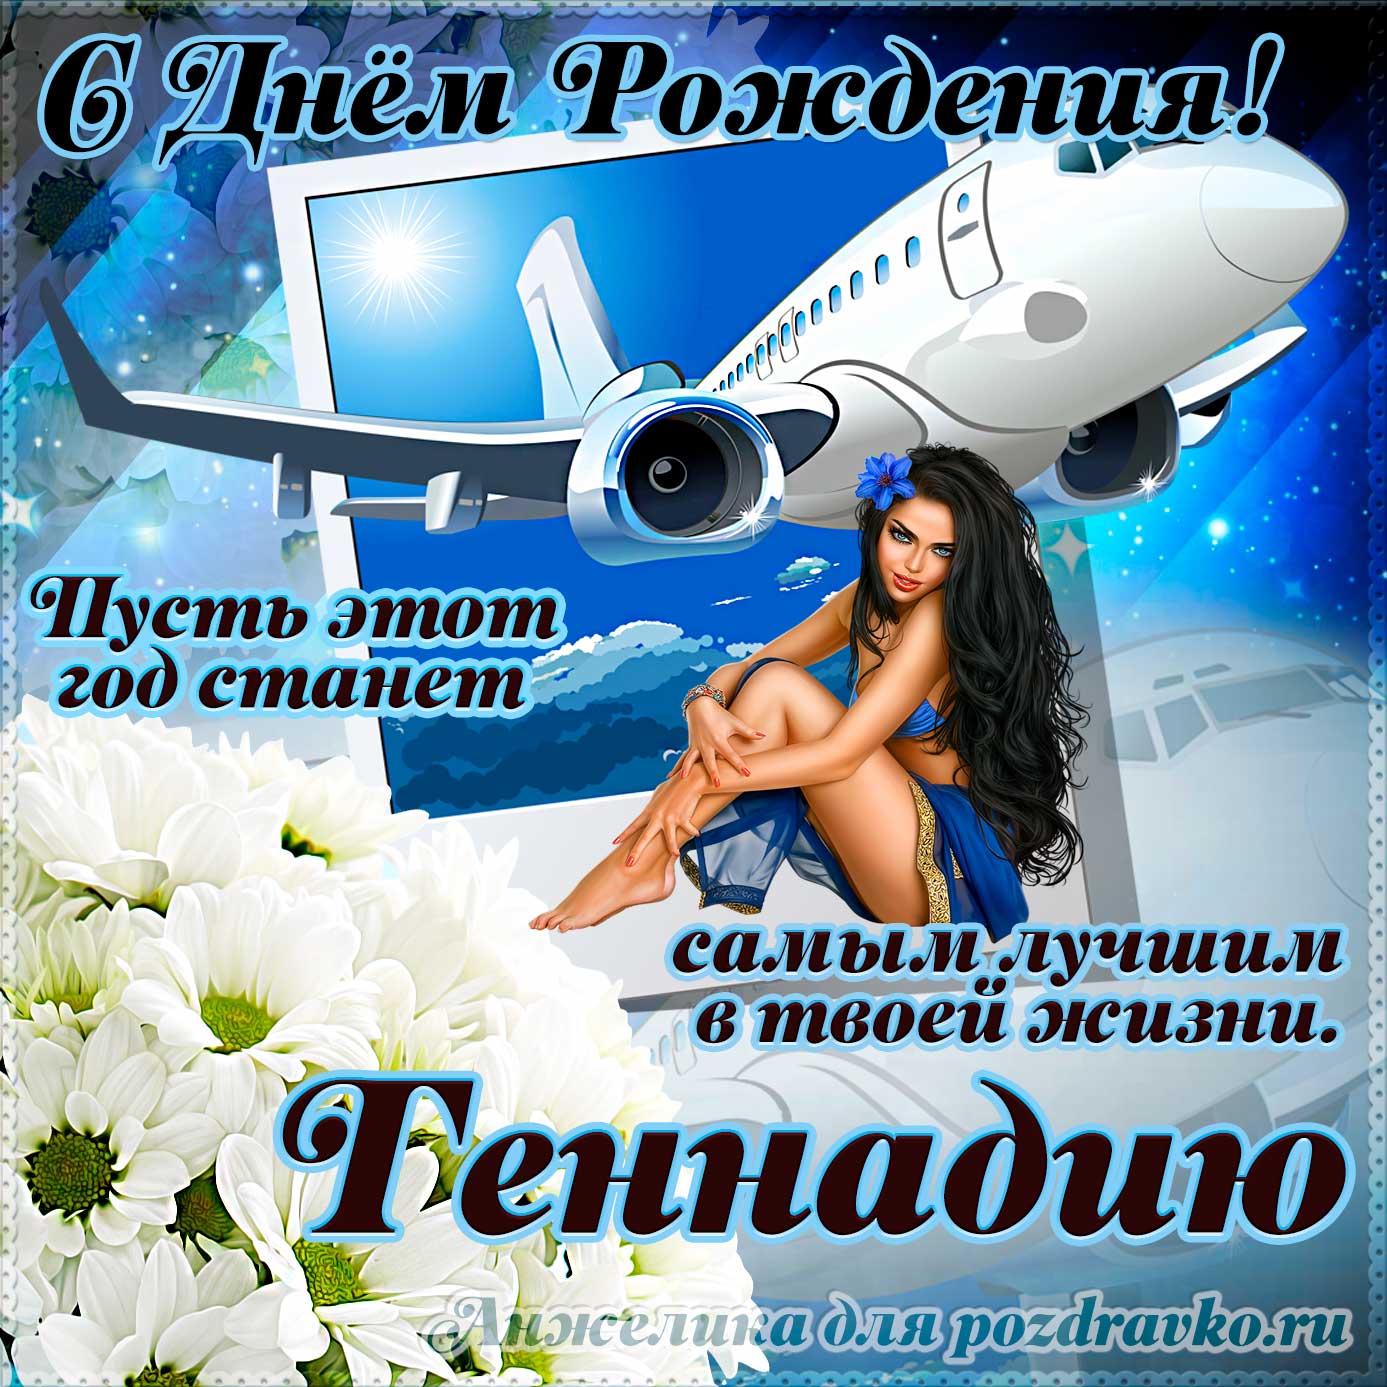 Открытка - Геннадию на день рождения с красивым пожеланием самолетом и девушкой. Скачать бесплатно или отправить картинку.